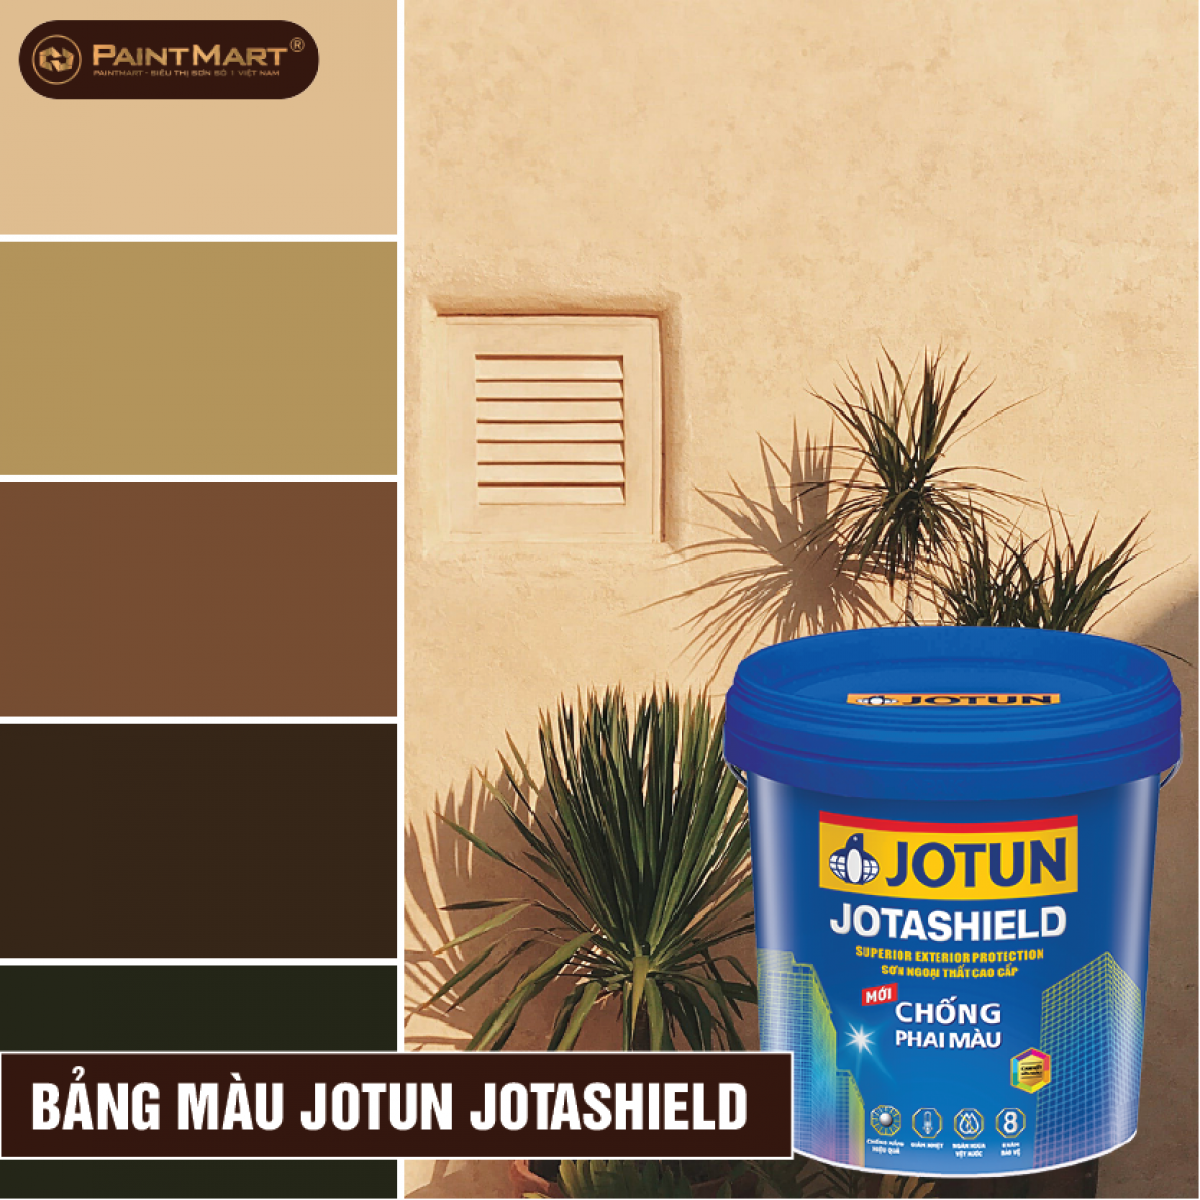 Jotun Jotashield: Thương hiệu sơn nổi tiếng Jotun đã cho ra mắt sản phẩm Jotashield, mang đến cho ngôi nhà của bạn lớp sơn bảo vệ chống thấm, chống nấm mốc và chịu được sự tấn công của thời tiết khắc nghiệt. Hãy xem hình ảnh để hiểu thêm về sản phẩm này!